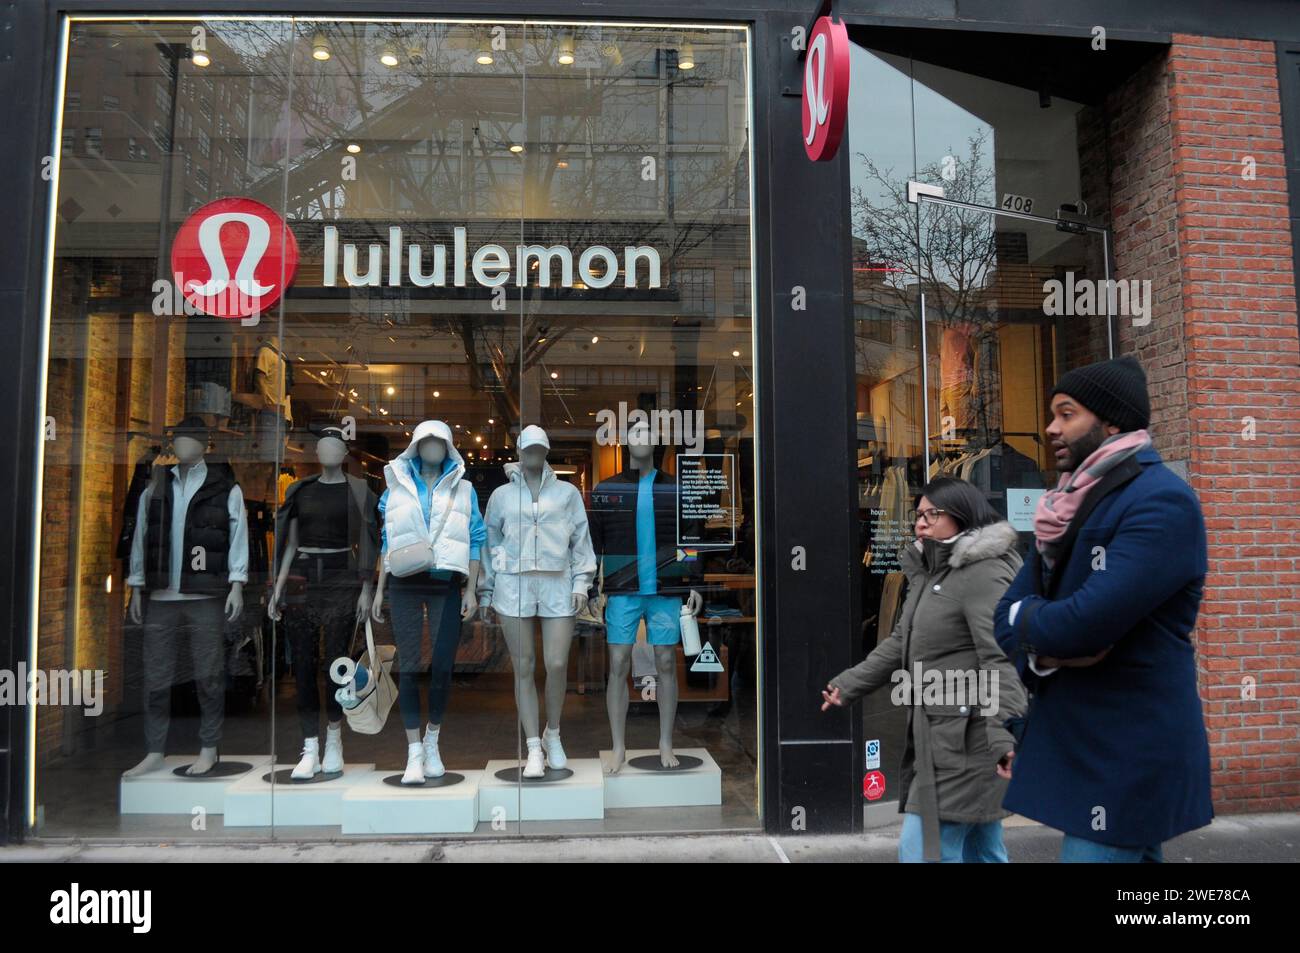 Lululemon Athletica Yoga Fashion Store Stock Photo - Download Image Now -  Lululemon, Store, Active Lifestyle - iStock